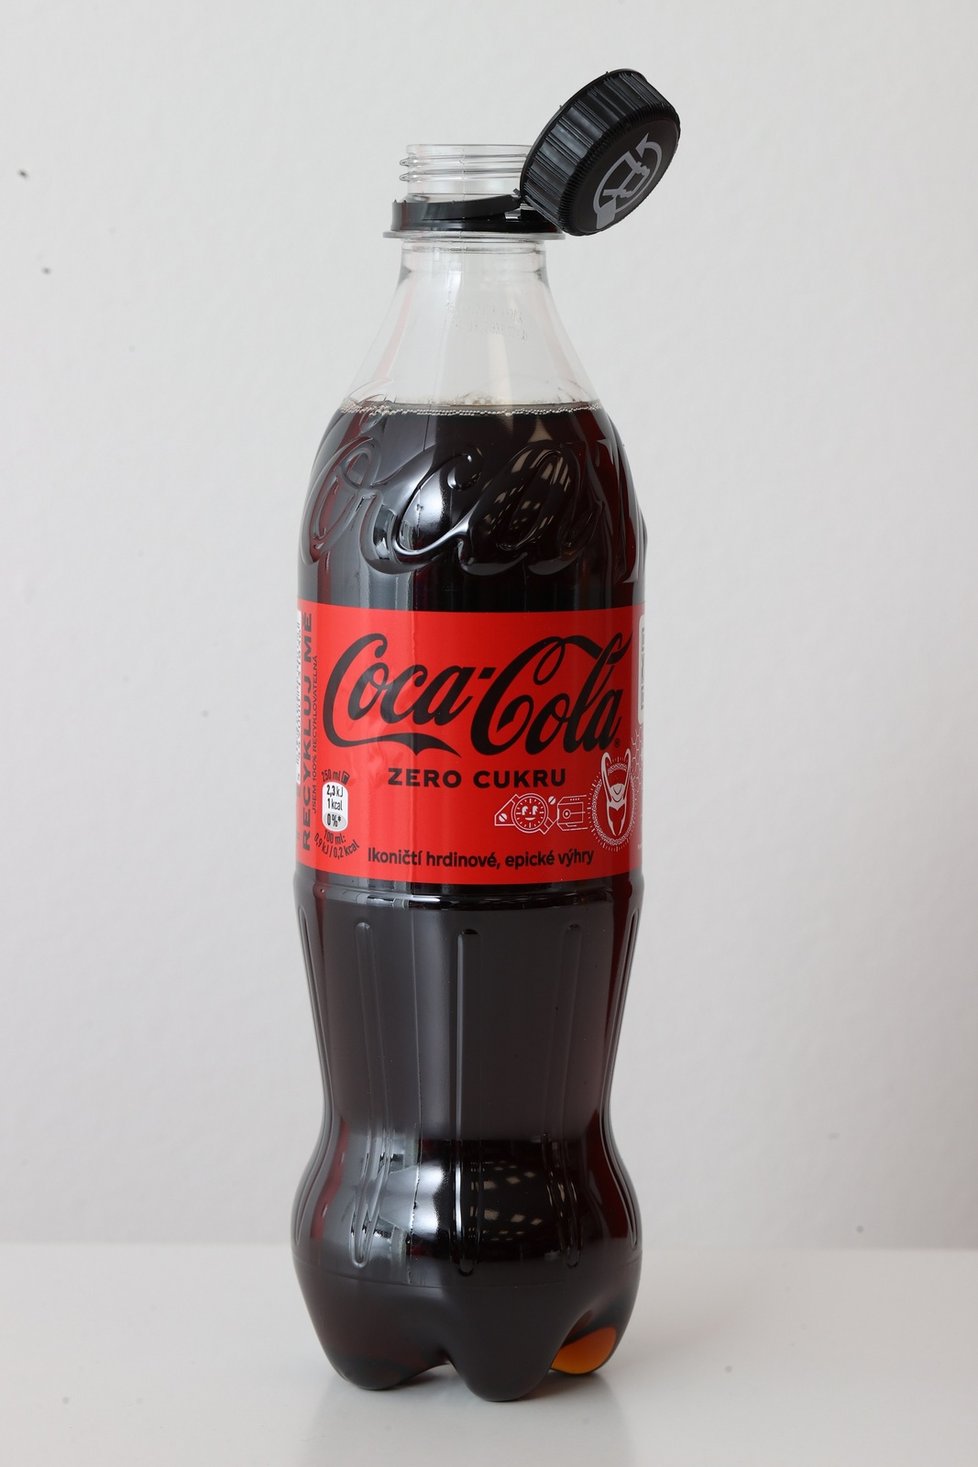 Coca-cola: Neodnímatelná víčka.